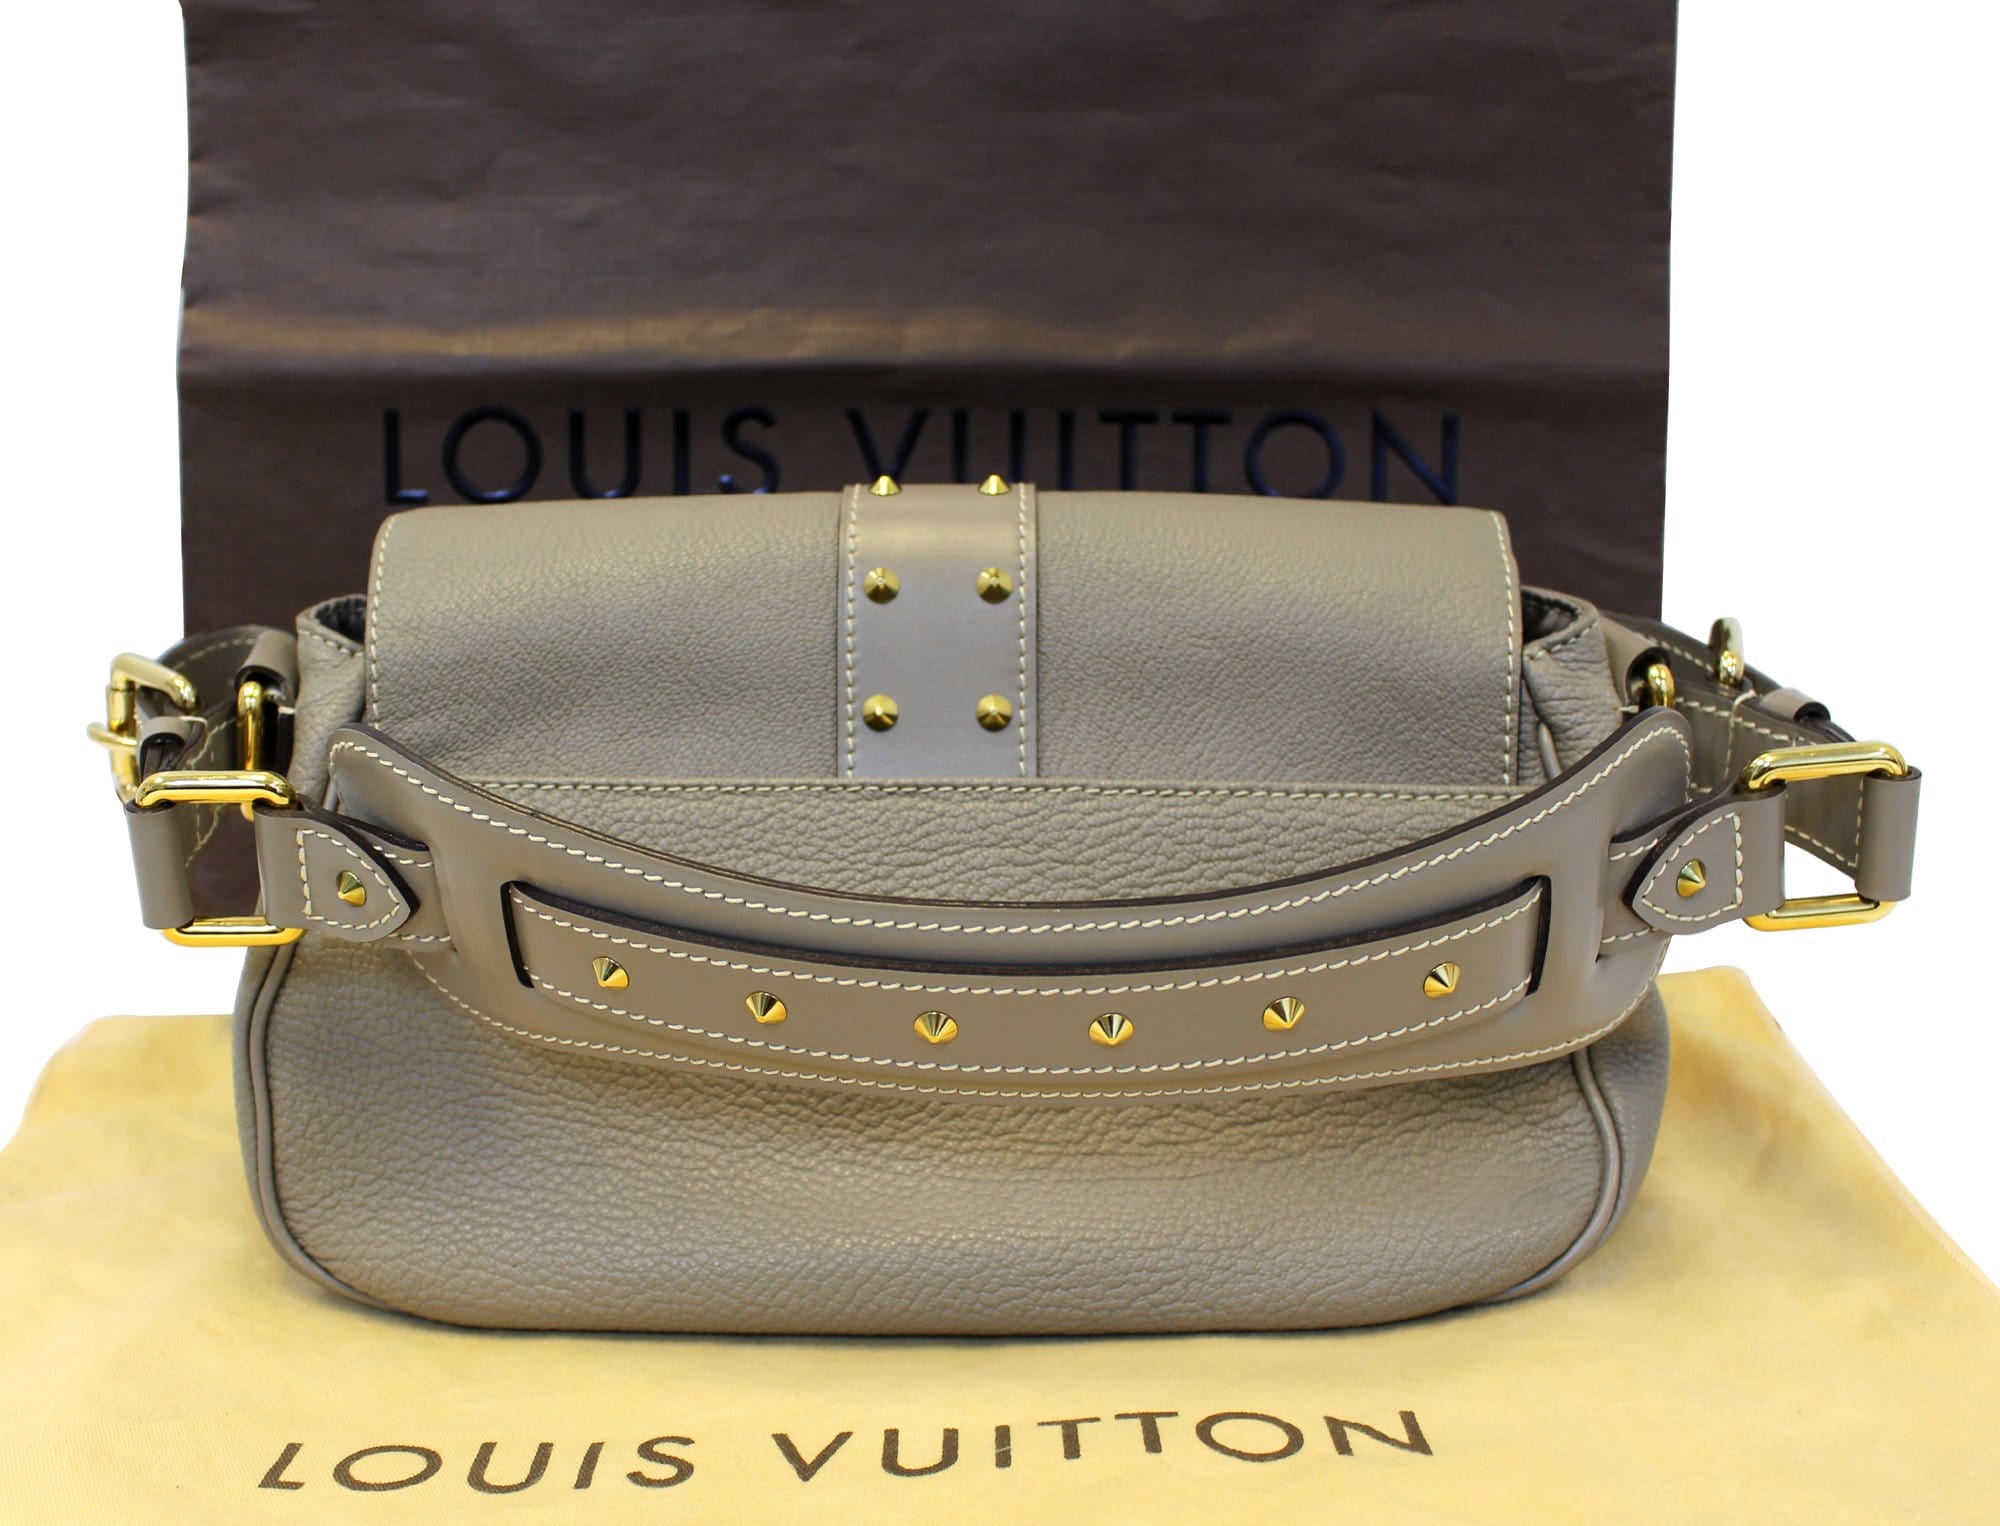 Louis Vuitton Suhali Le Favori Verone Wallet